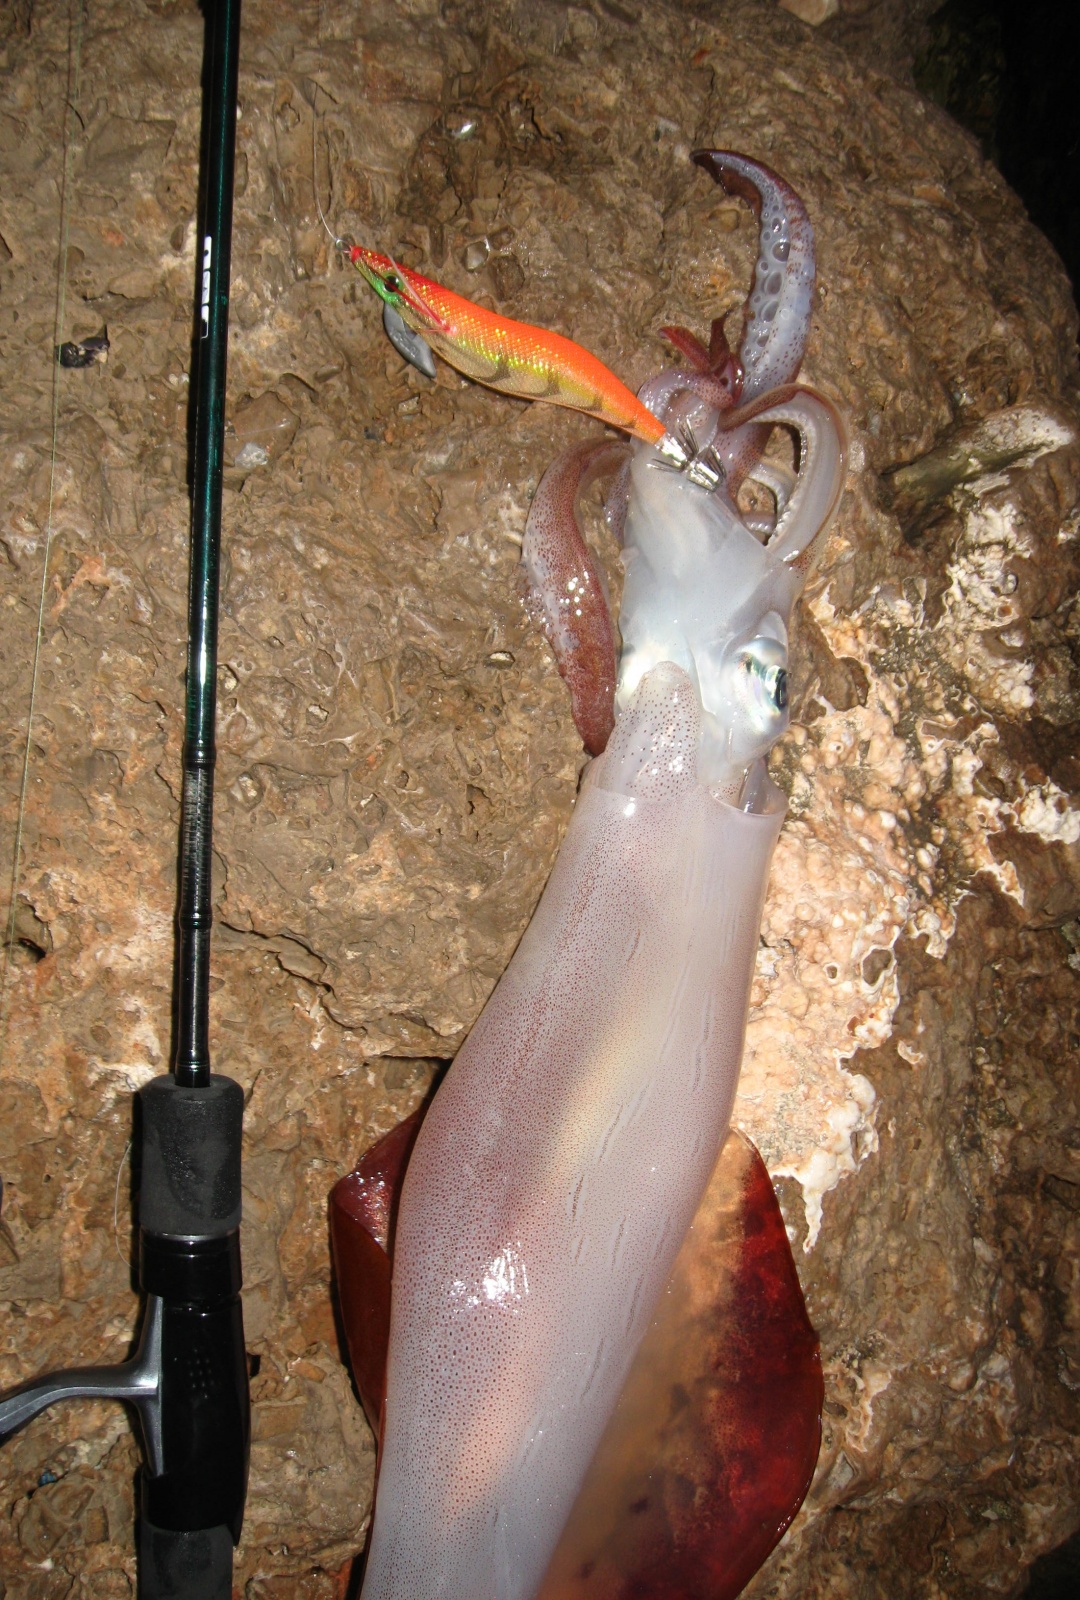 La pêche du calamar au bouchon lumineux